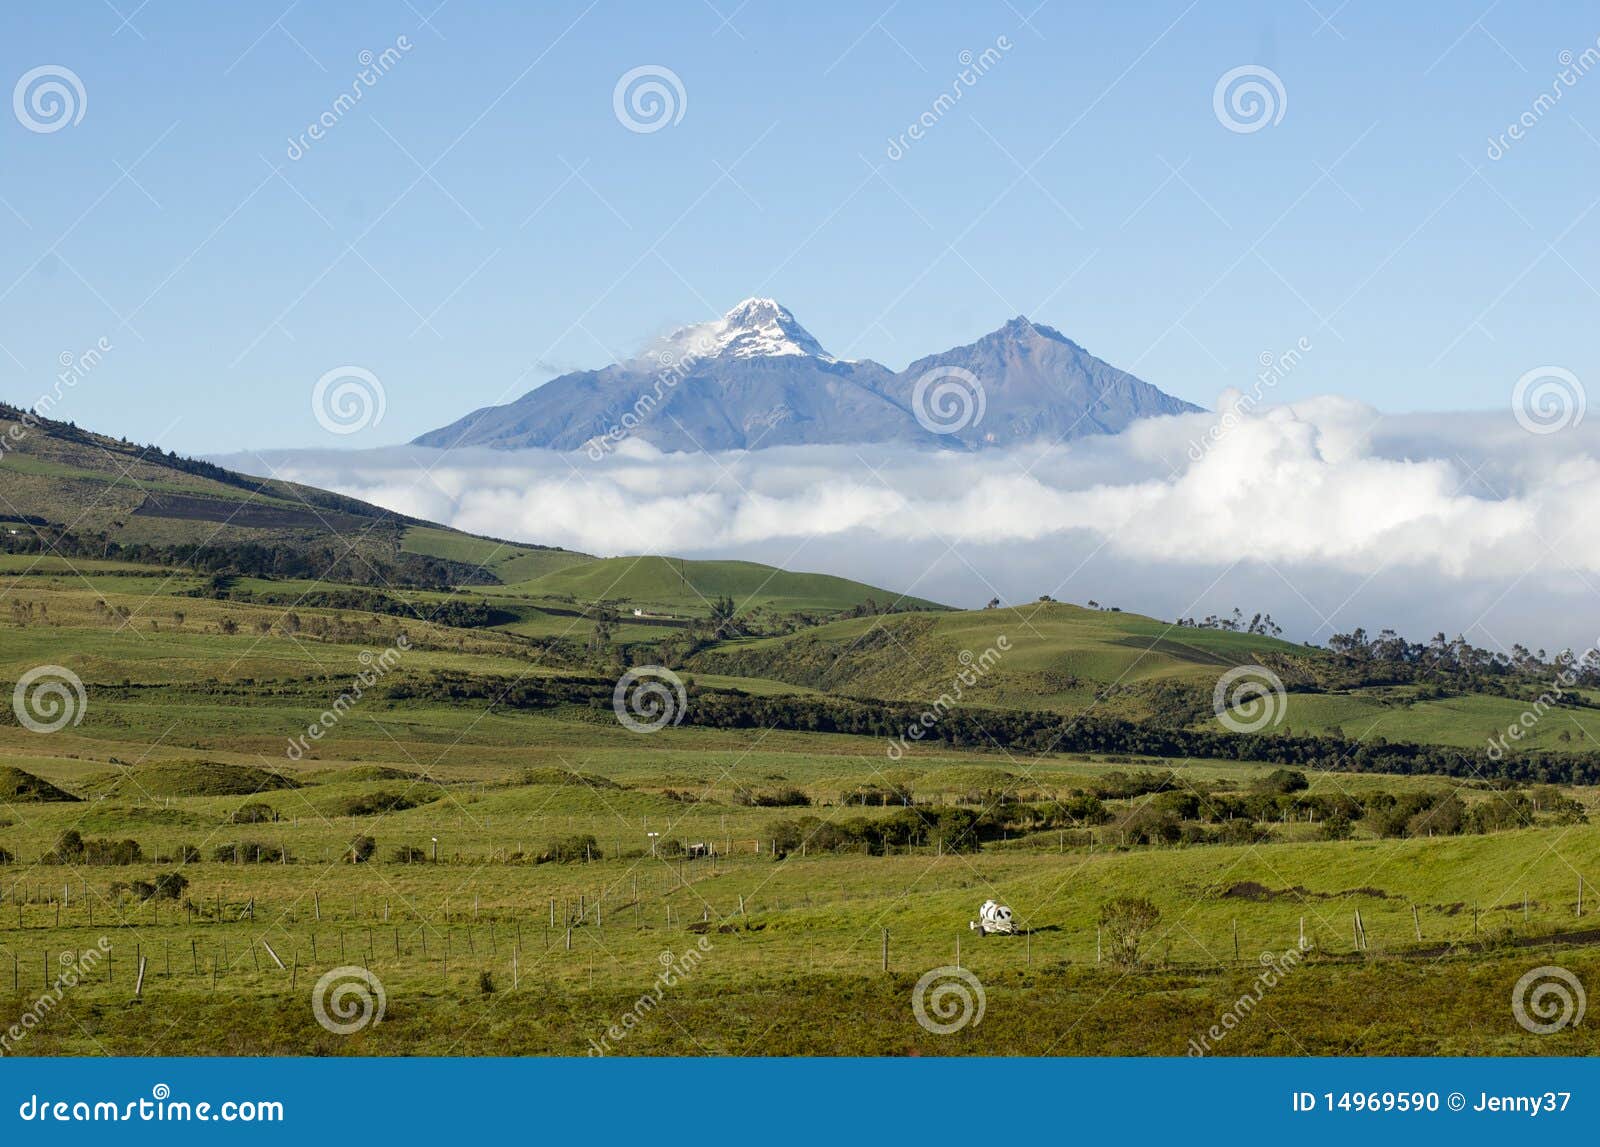 iliniza sur iliniza norte volcanos in ecuador